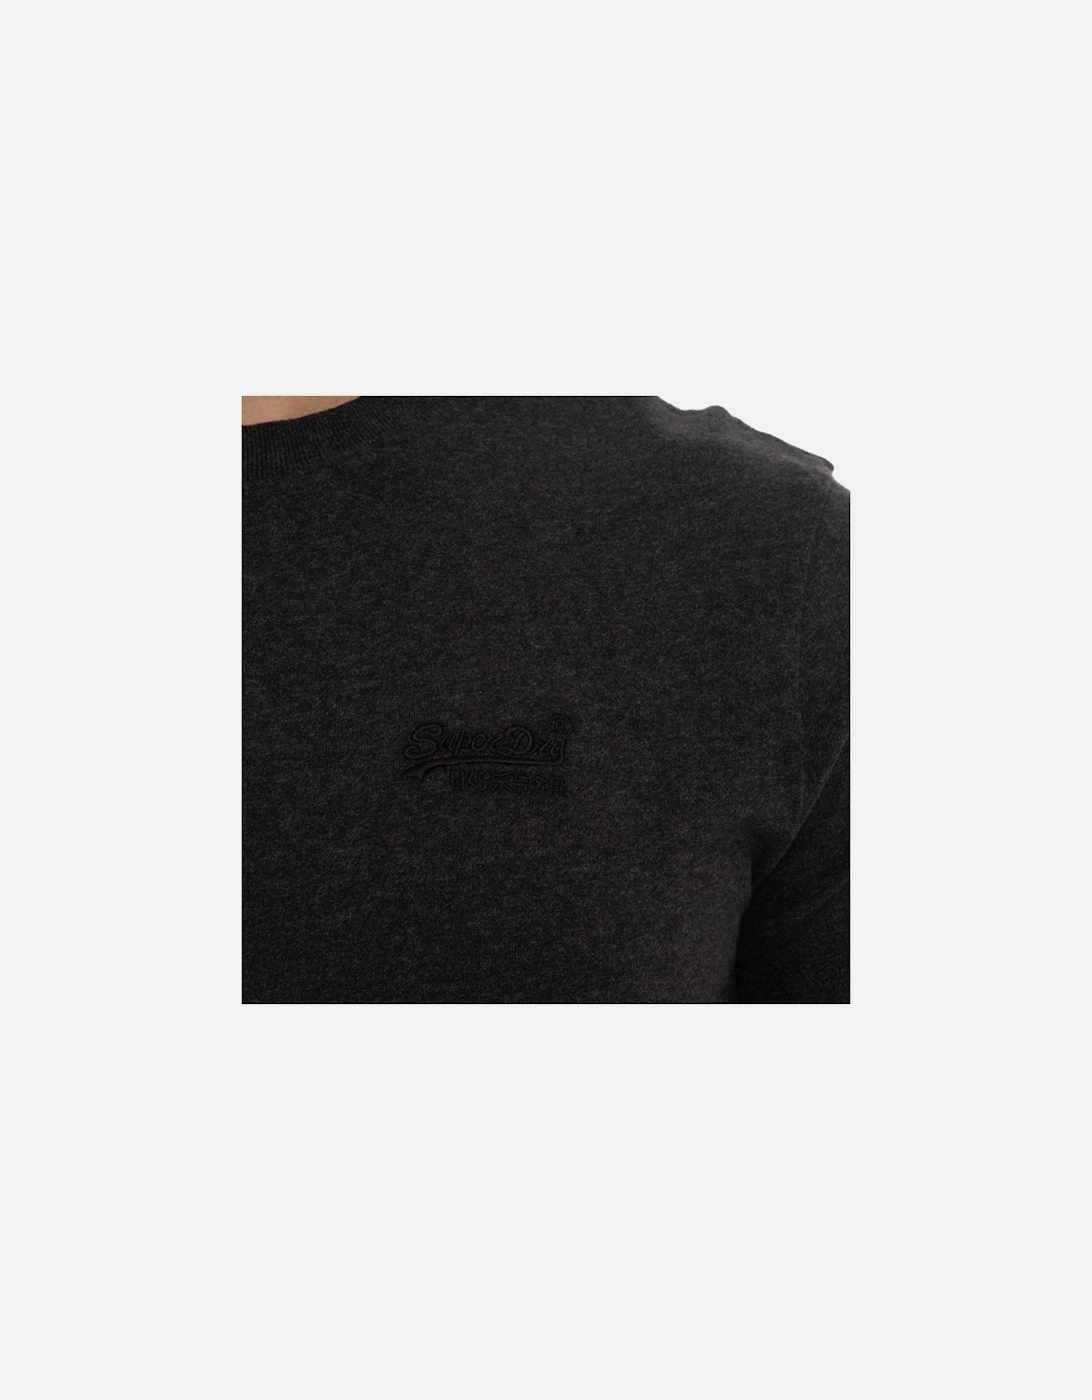 Mens Vintage Embroidered Logo T-Shirt (Black)